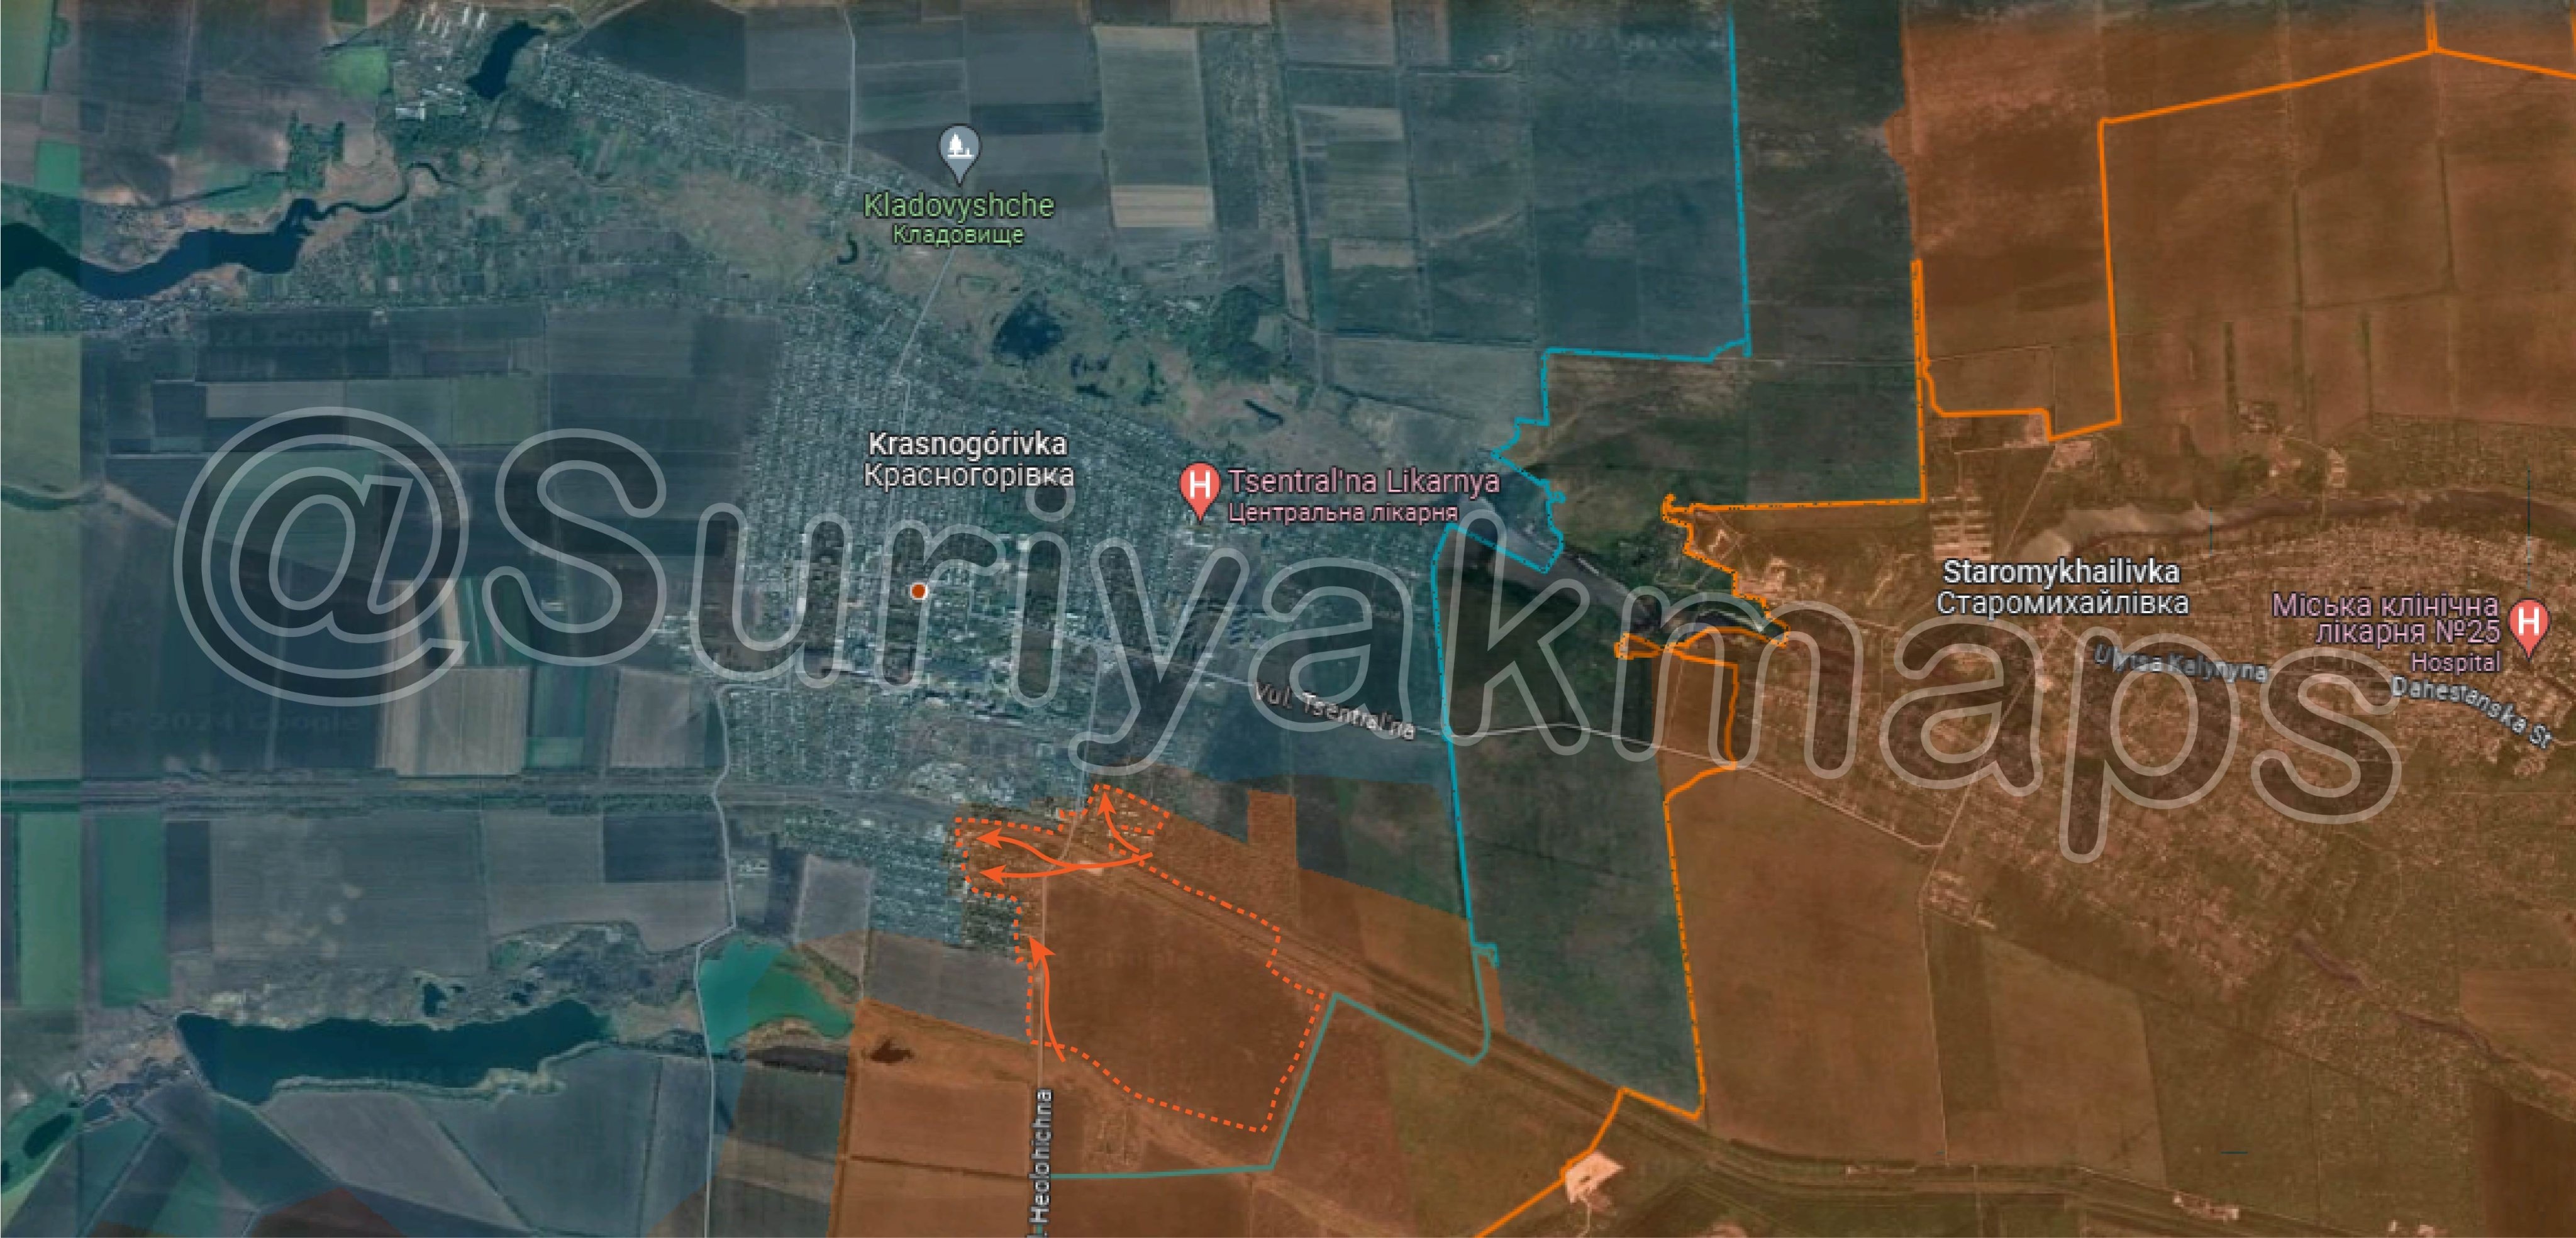 Bản đồ chiến sự Ukraine ở Krasnogorivka gần thủ phủ Donetsk ngày 15/4. Trong đó, Nga kiểm soát phần màu nâu, các mũi tên màu cam thể hiện hướng tấn công của họ và khu vực bao quanh bởi nét đứt màu cam là nơi lực lượng Moscow vừa giành được (Ảnh: Suriyakmaps).